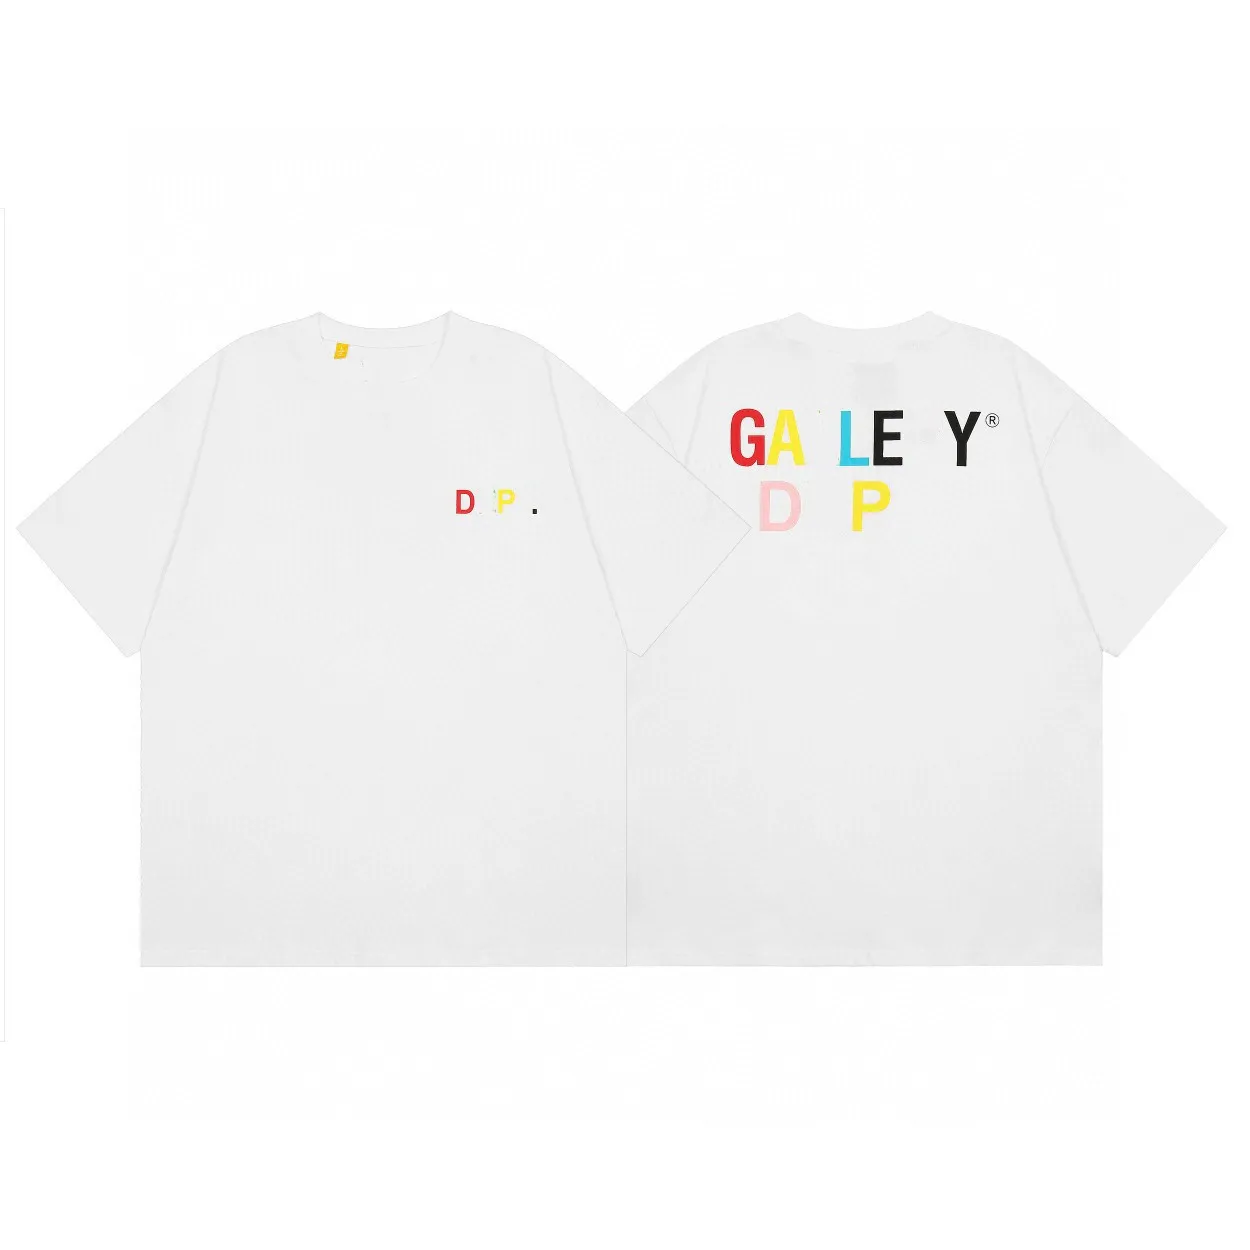 Galleryss, camisetas para hombres, camisetas de diseñador para hombres, Galleryss Depts, camiseta con cuello redondo y letras blancas, camiseta holgada informal de calle Hip hop